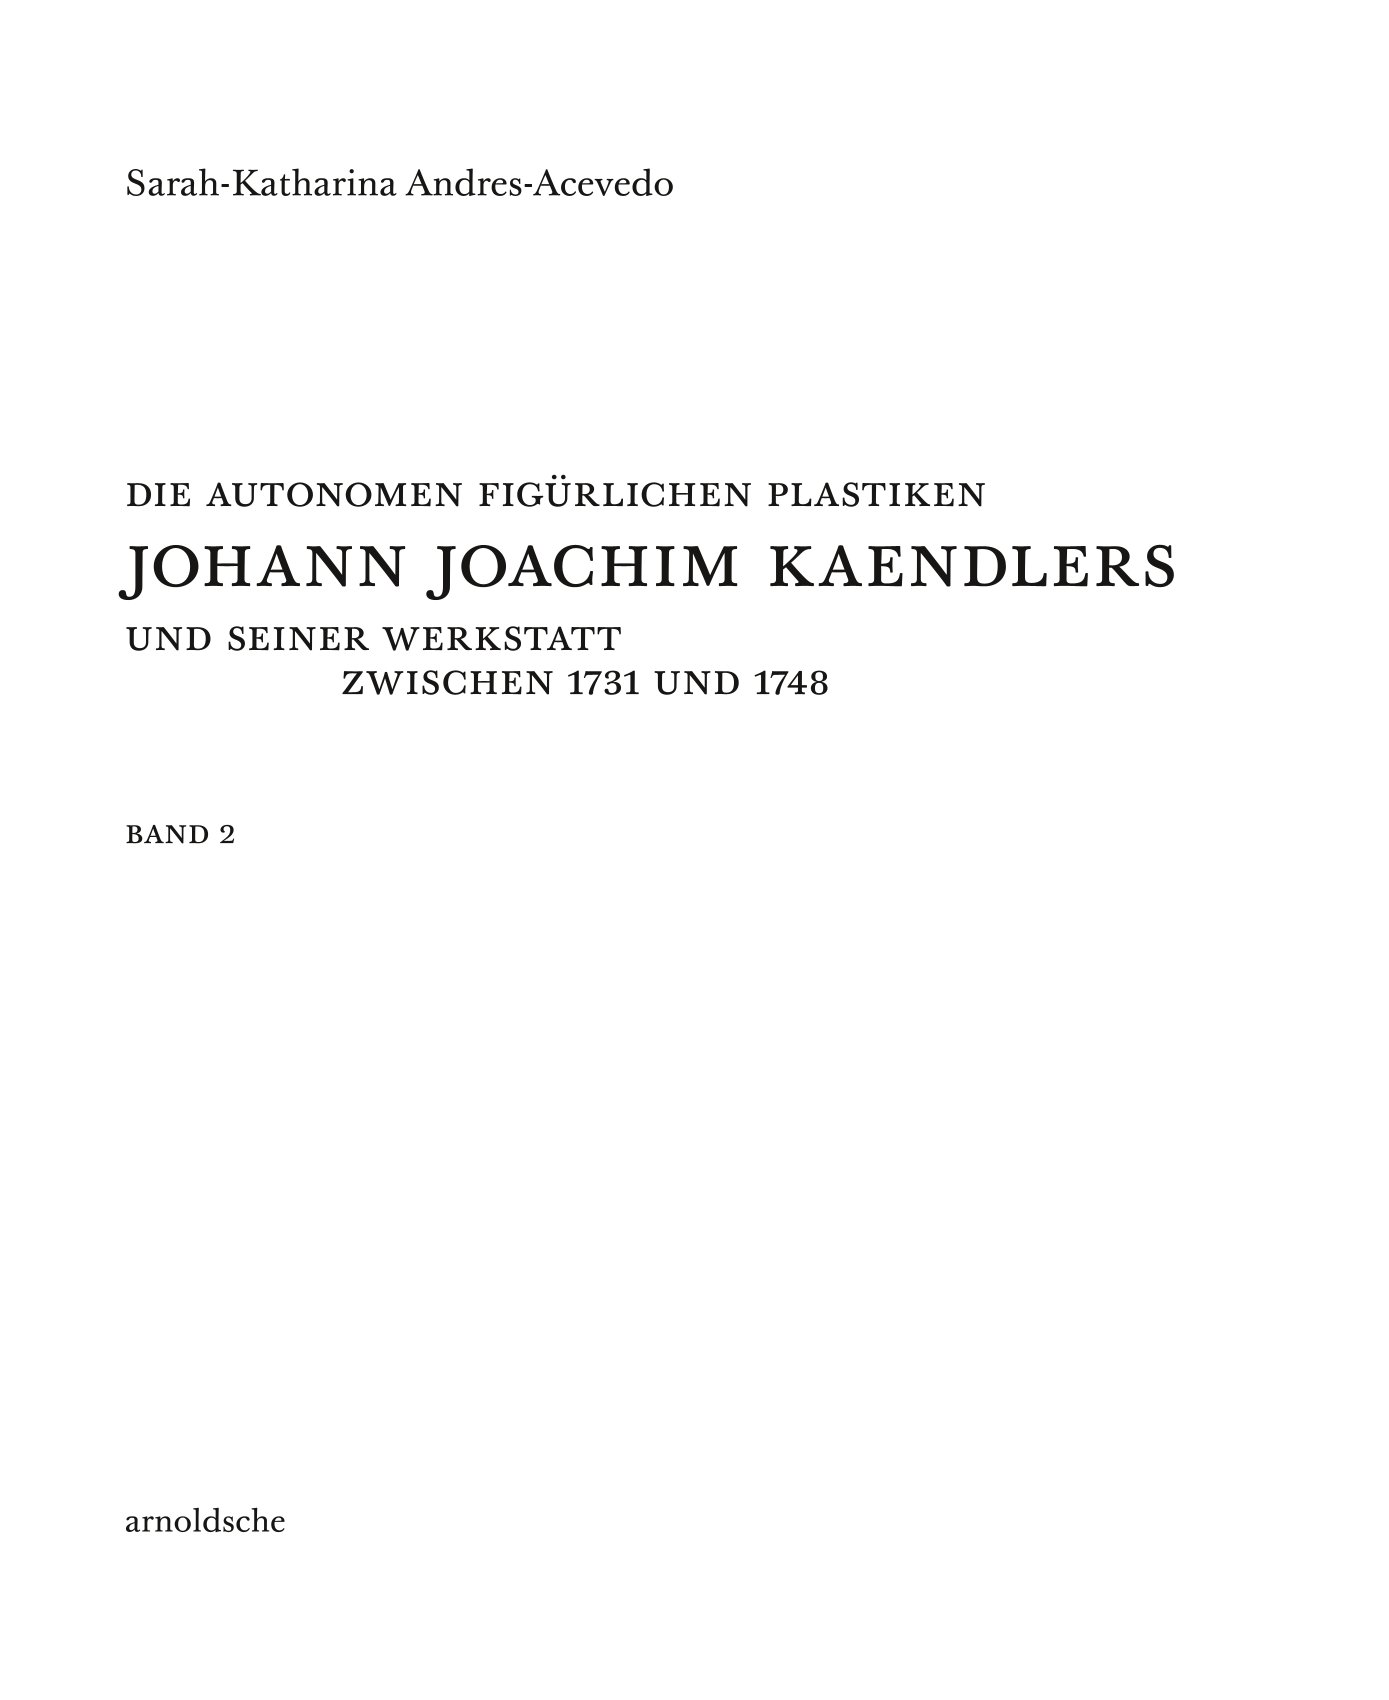 Die autonomen figürlichen Plastiken Johann Joachim Kaendlers und seiner Werkstatt zwischen 1731 und 1748